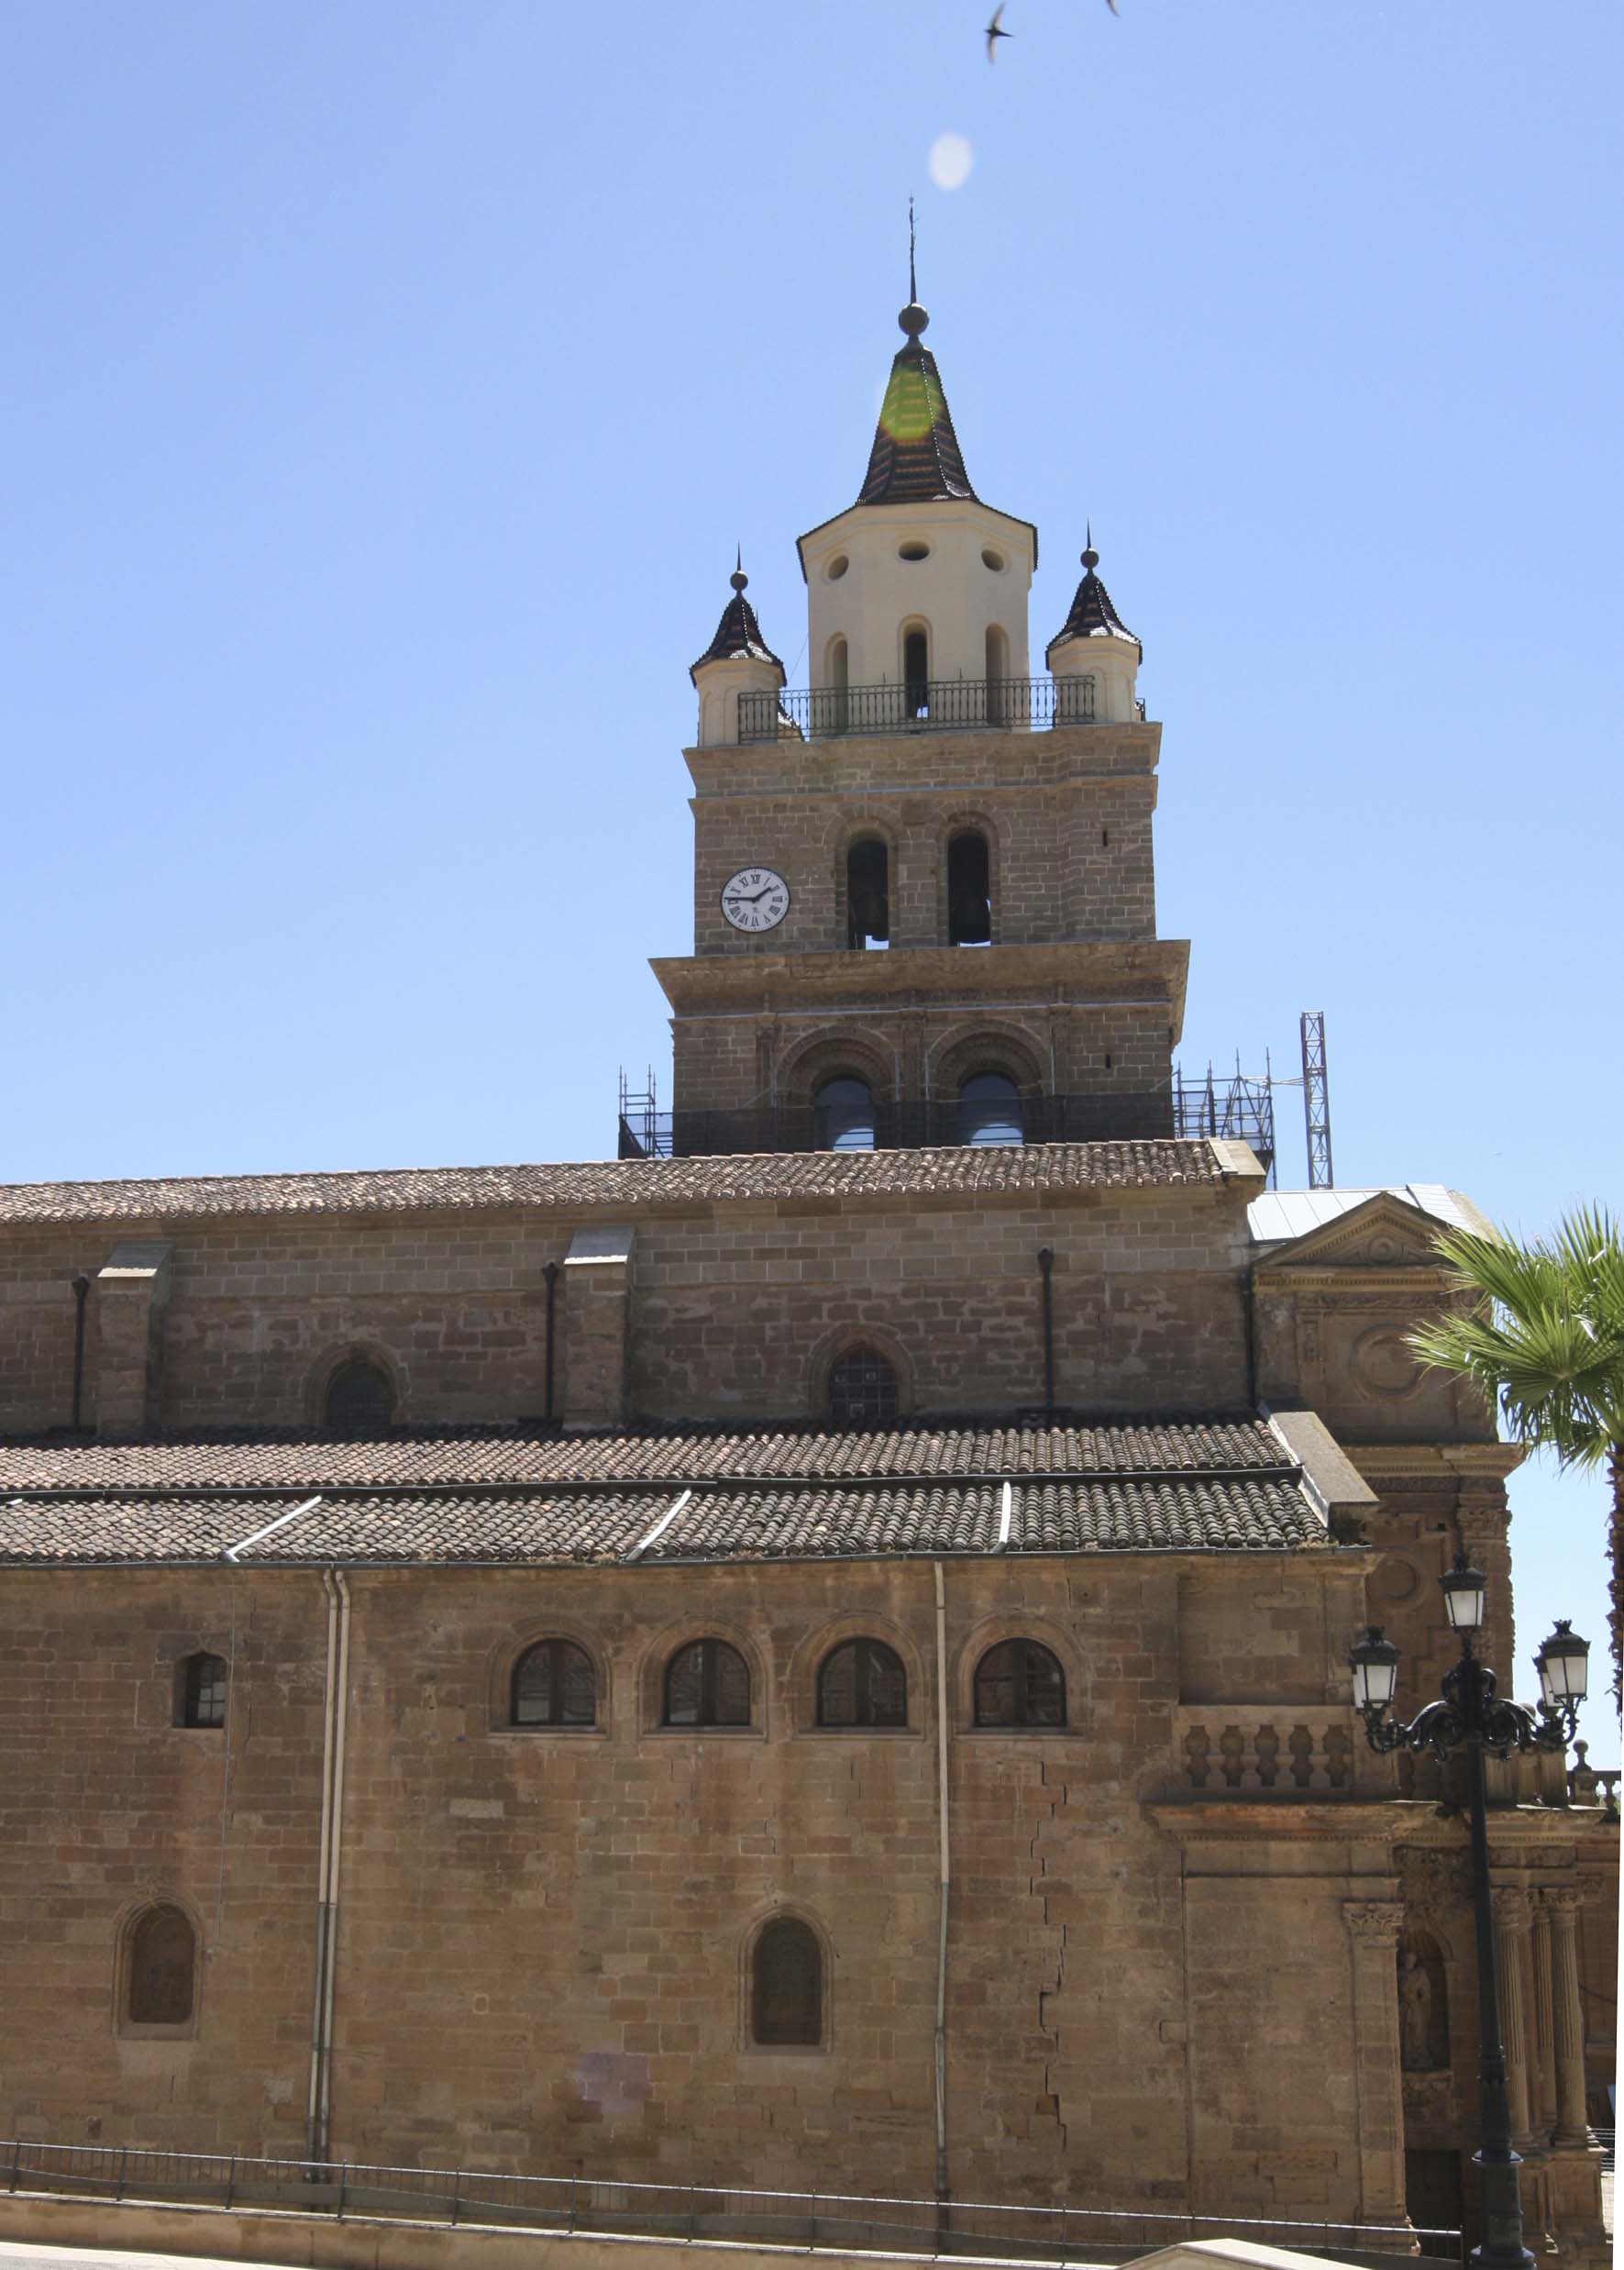 El Ministerio de Educación, Cultura y Deporte invierte casi 350.000 euros en la restauración de la Catedral de Calahorra